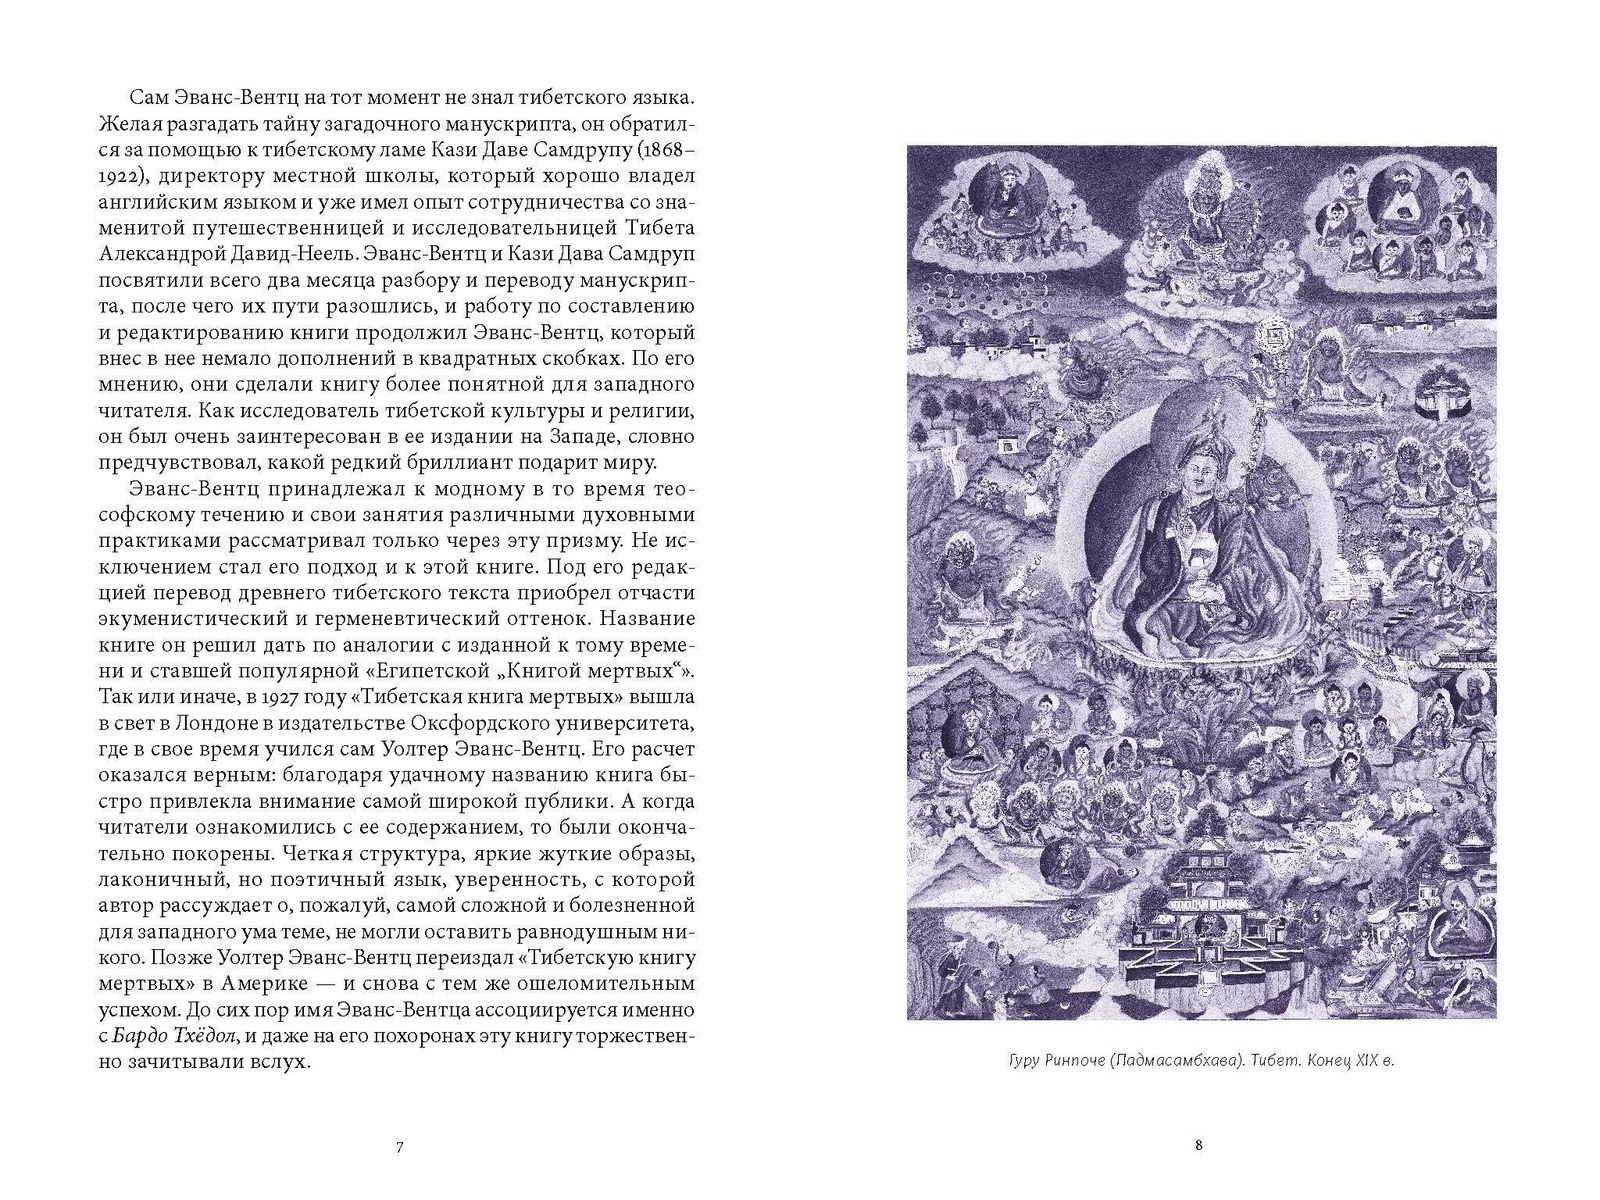 Падмасамбхава. Тибетская Книга мертвых